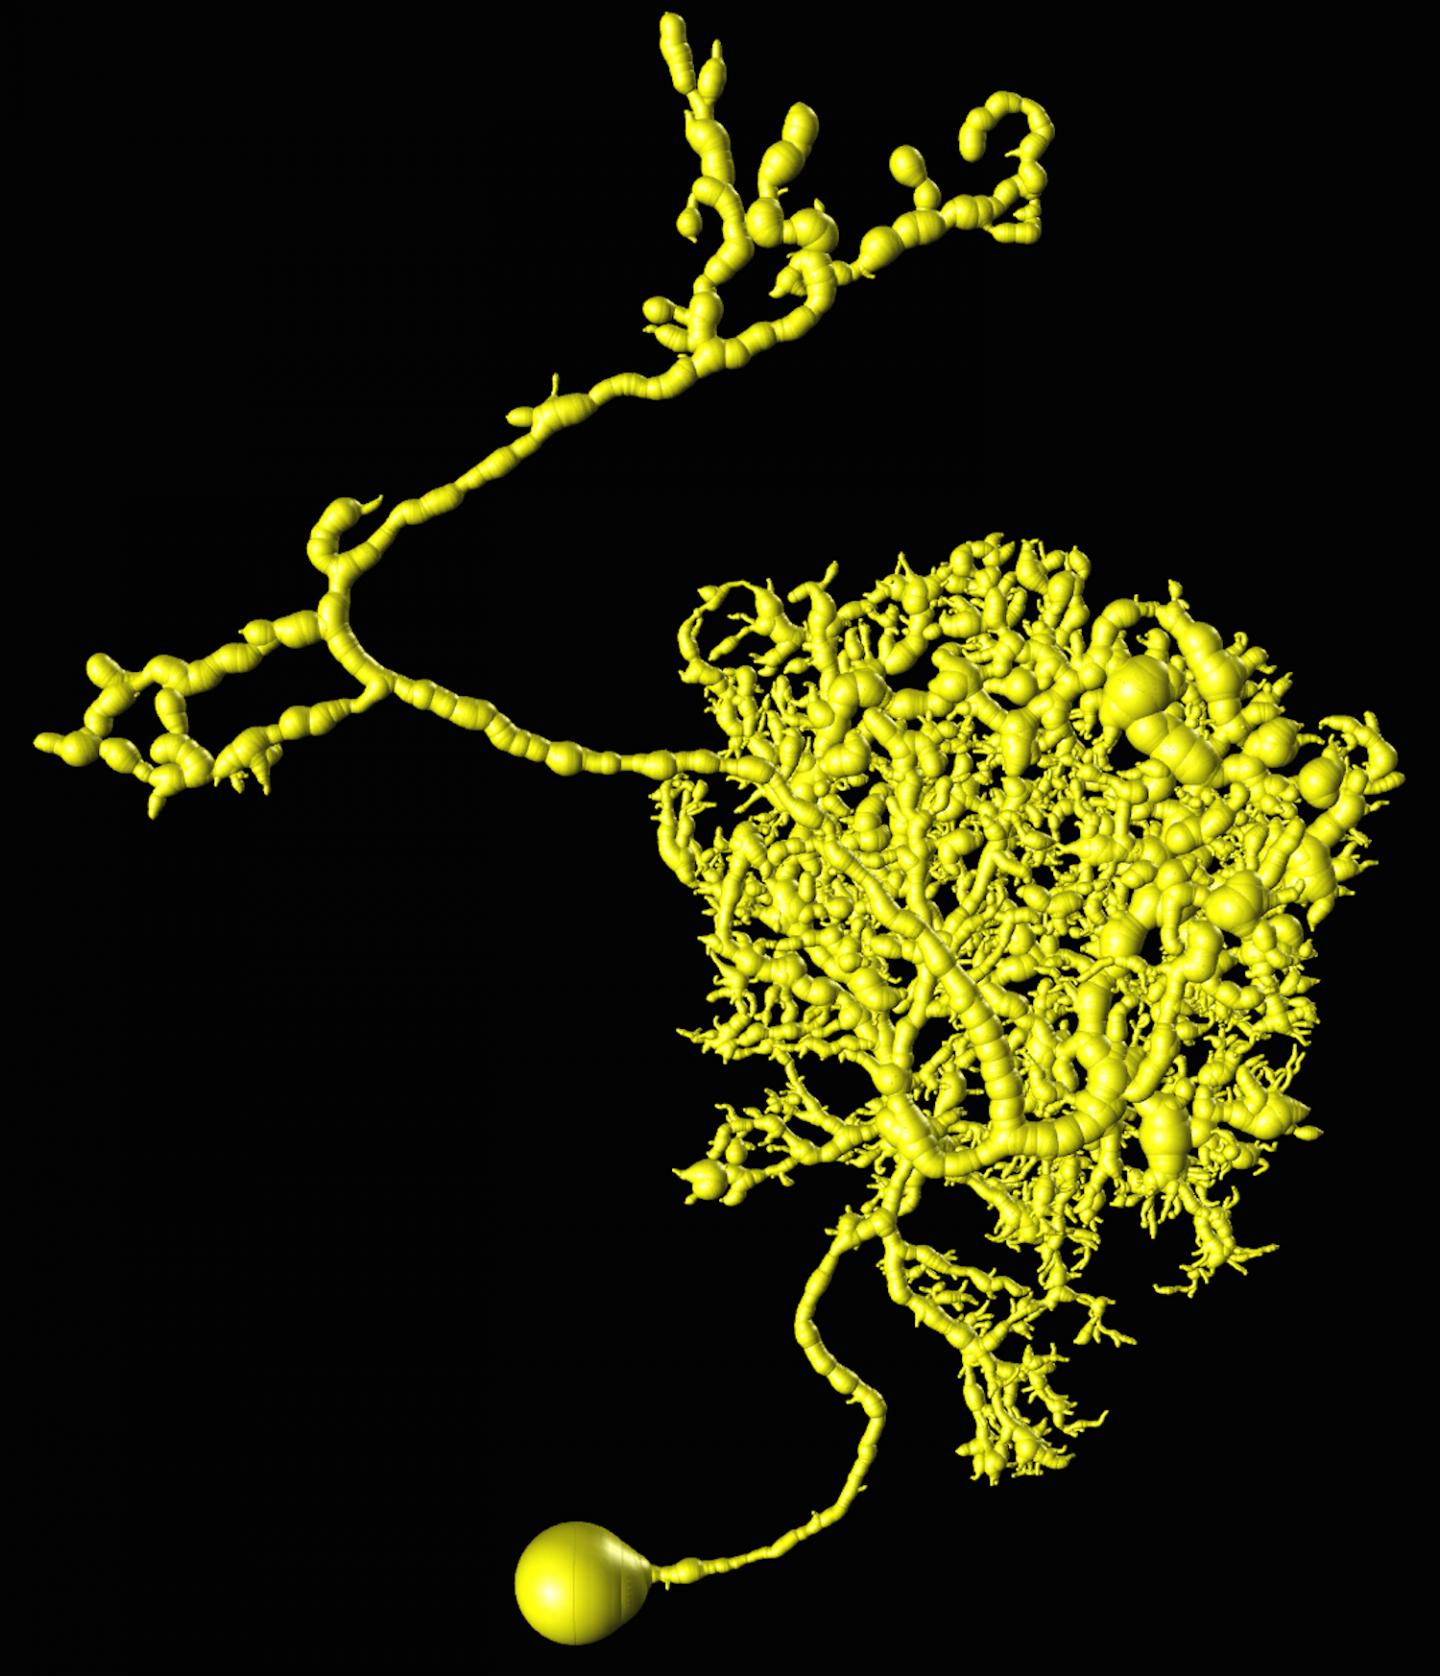 3-D Neuron Reconstruction